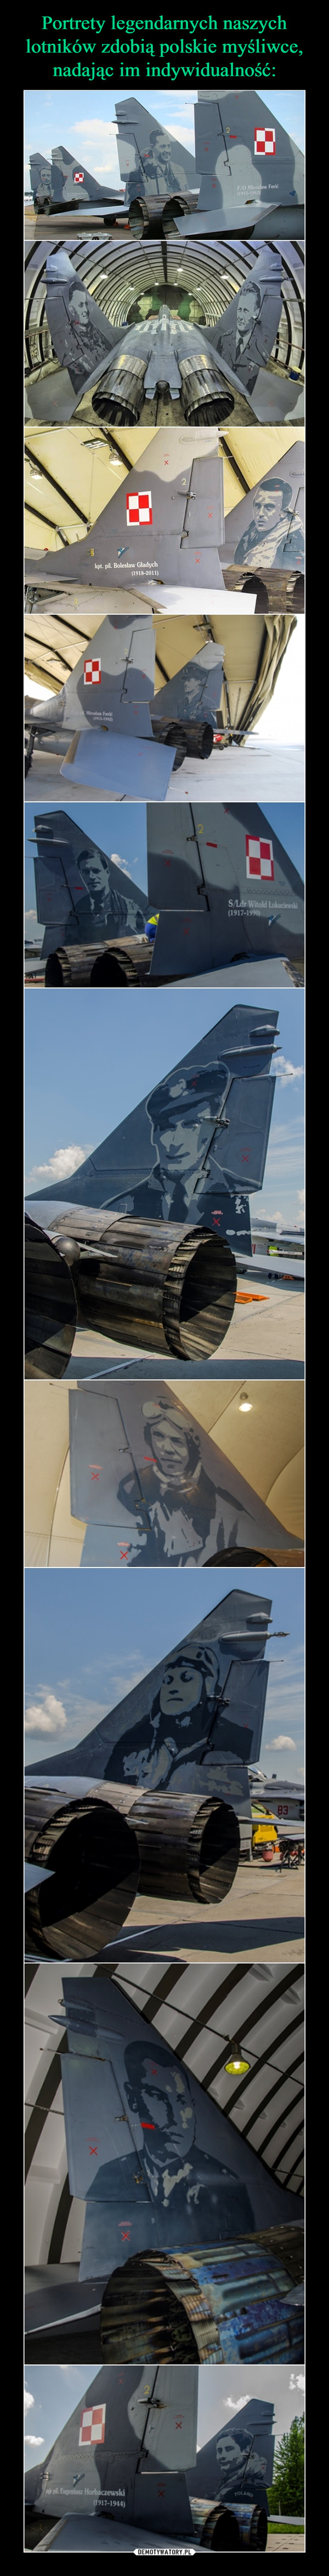 Portrety legendarnych naszych lotników zdobią polskie myśliwce, nadając im indywidualność: